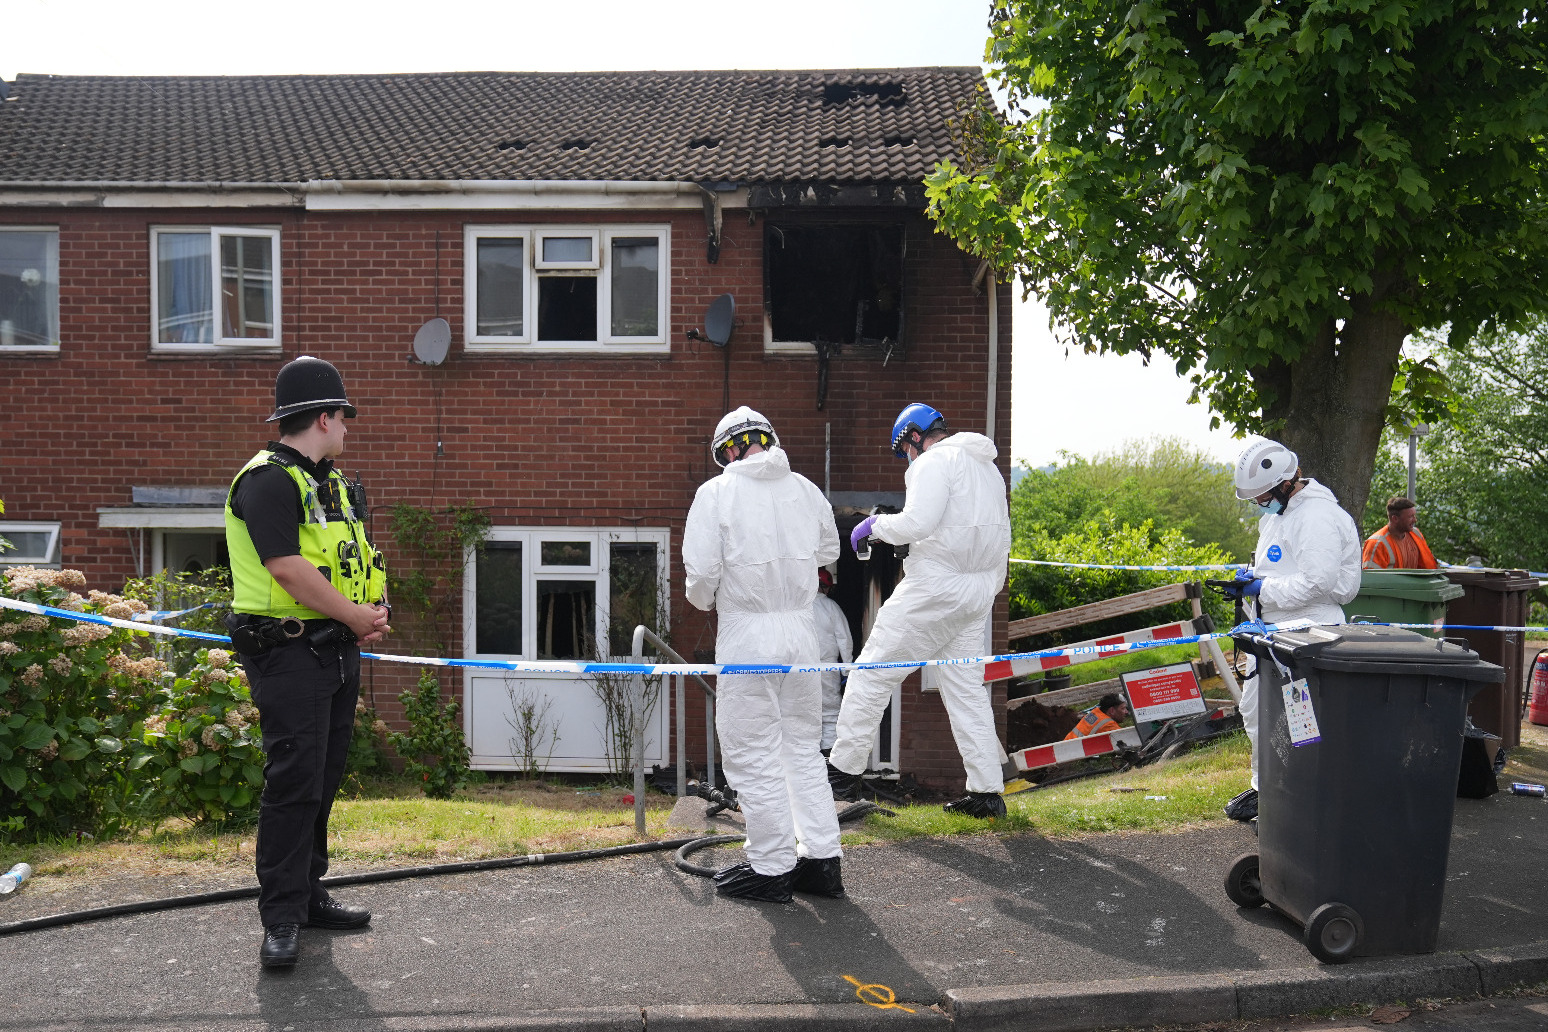 Two women killed in house fire in Wolverhampton